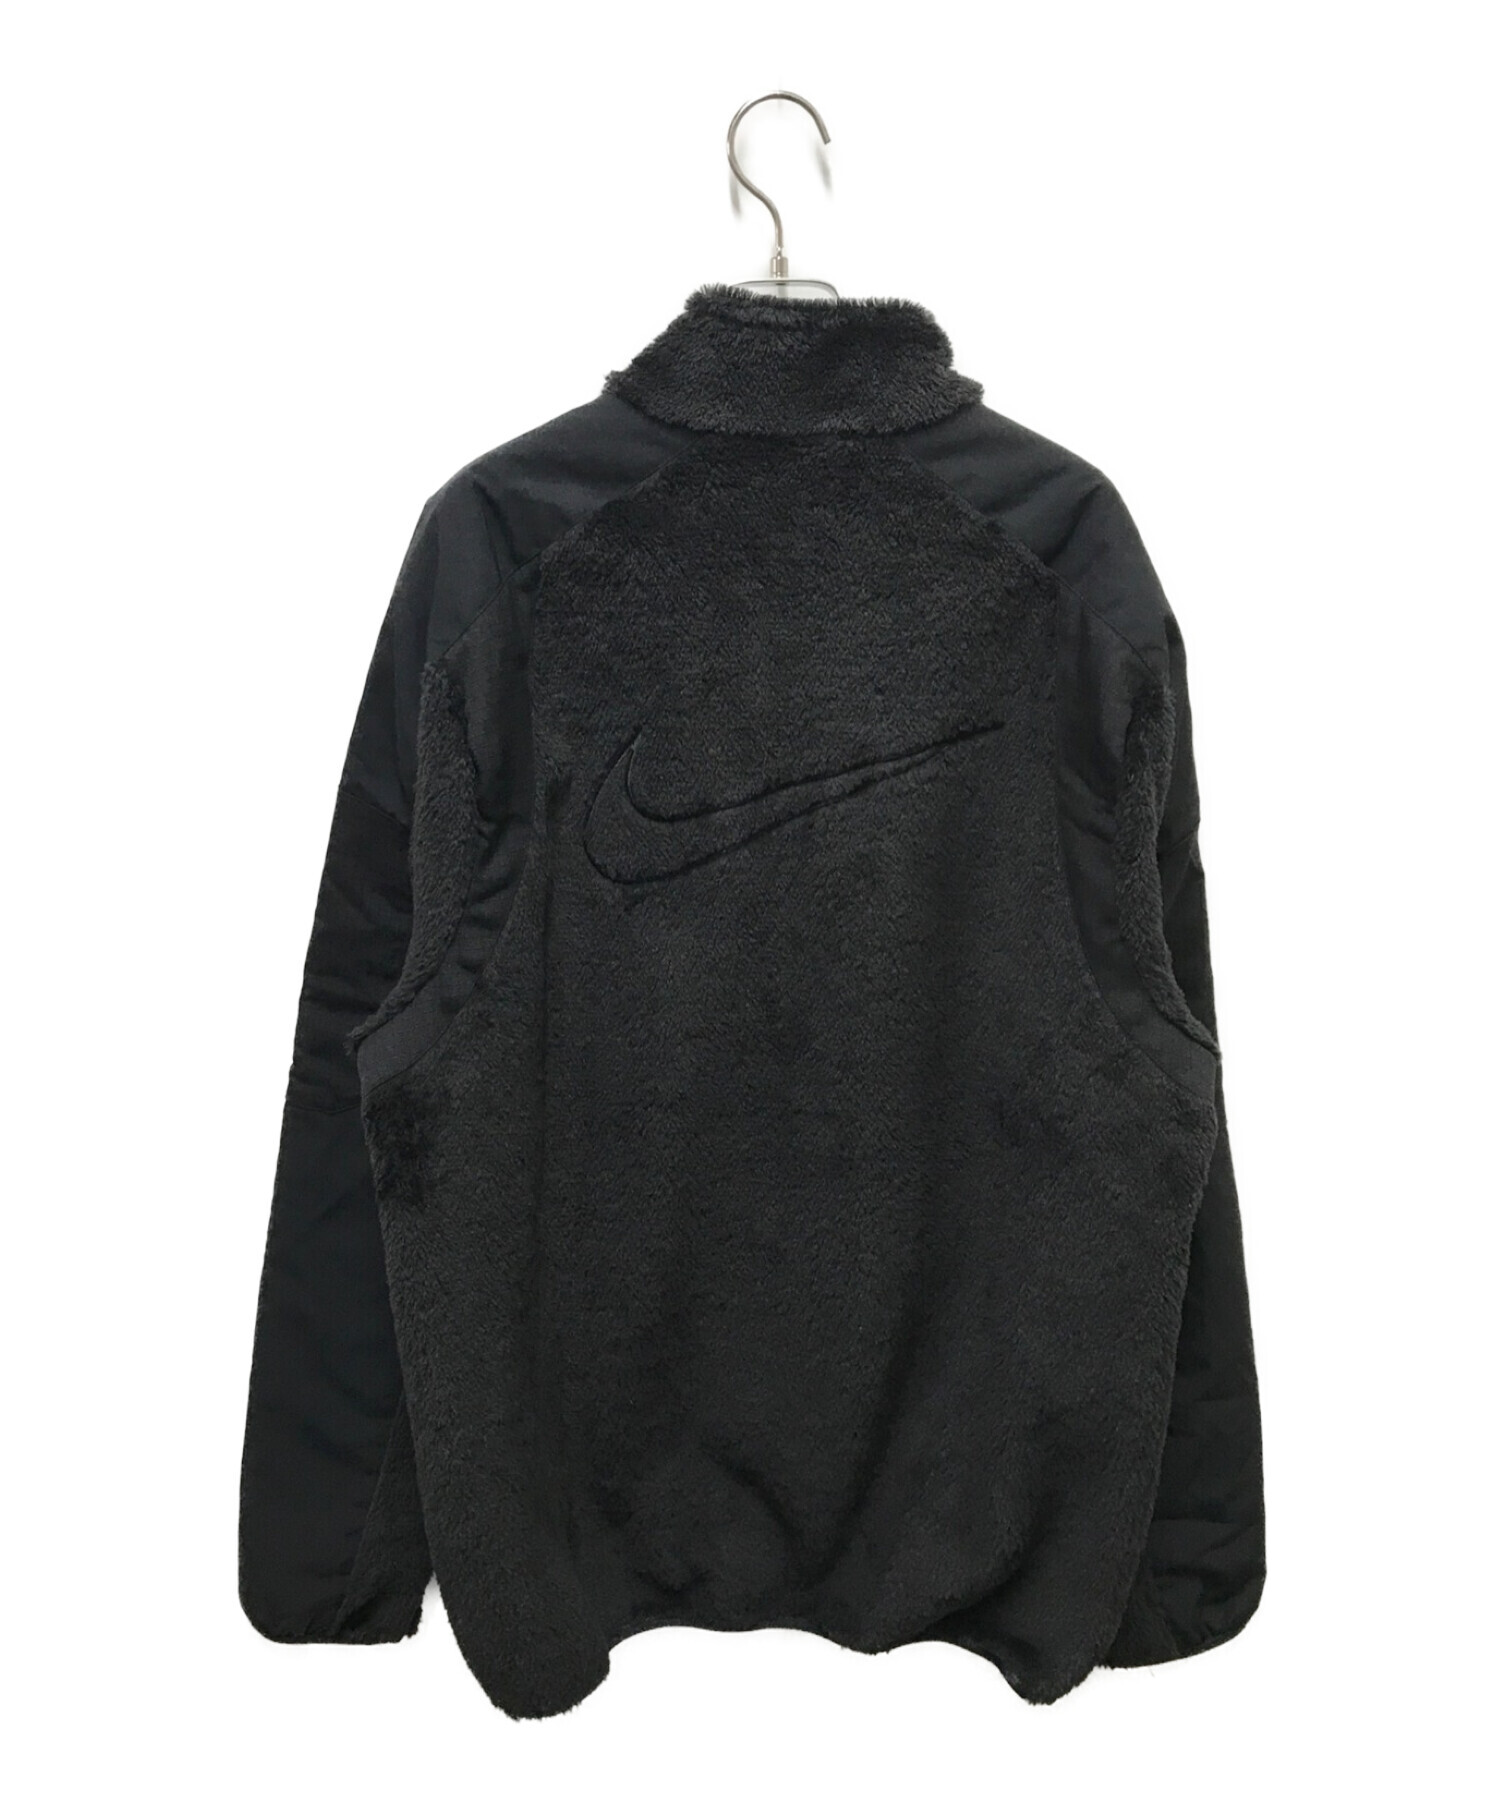 NIKE NOCTA (ナイキ ノクタ) フリースジャケット ブラック サイズ:L